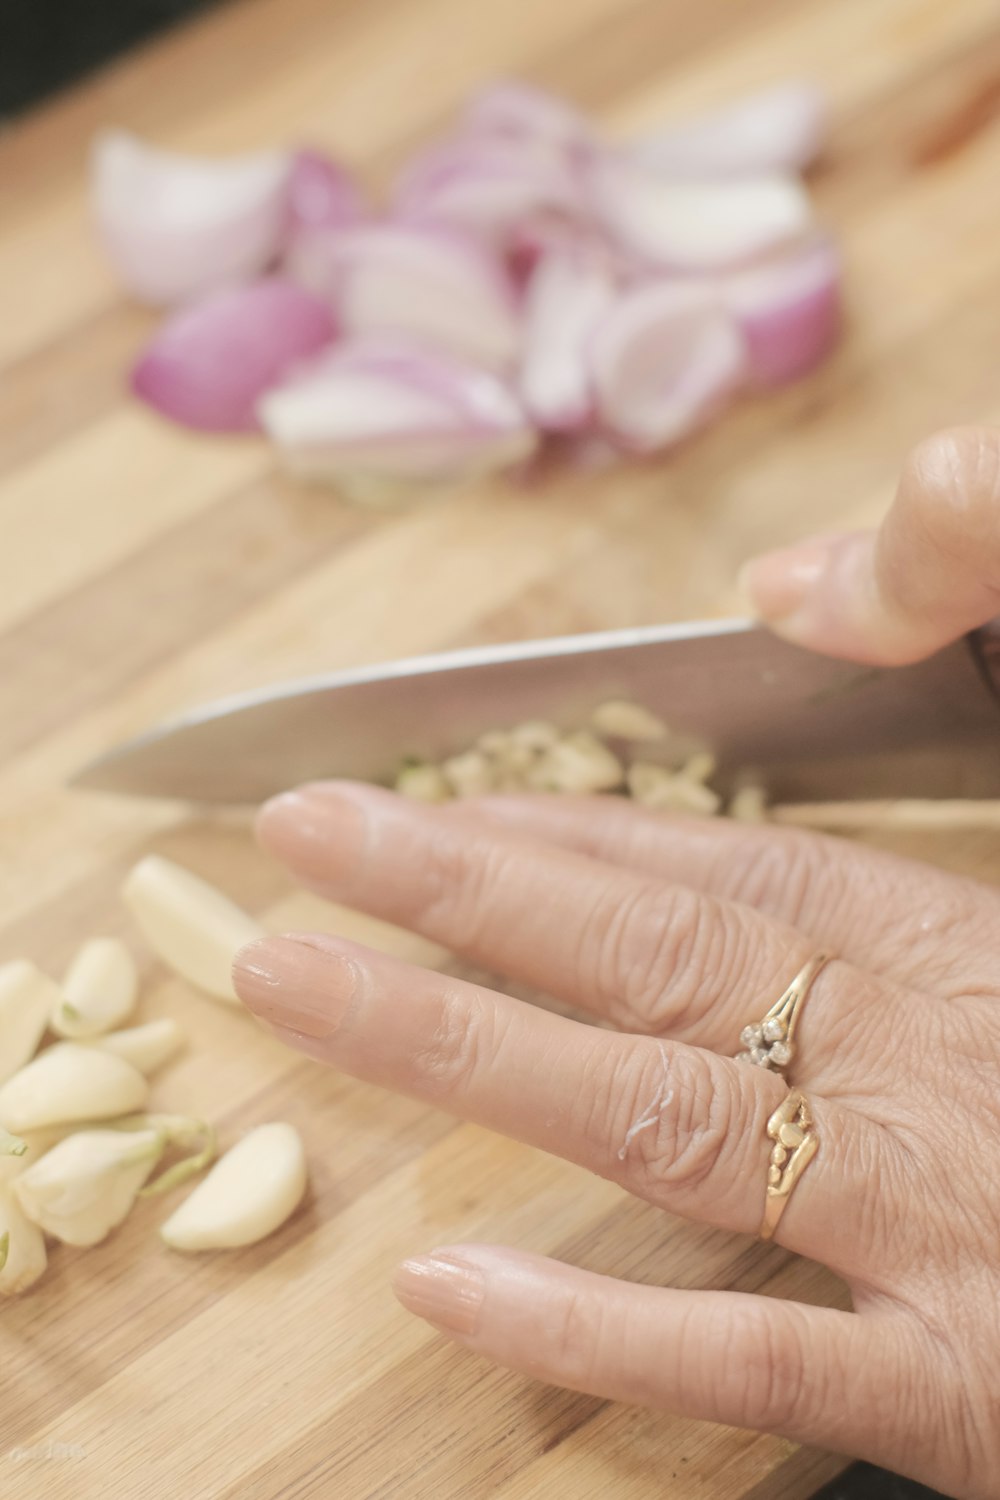 a woman is cutting up garlic on a cutting board